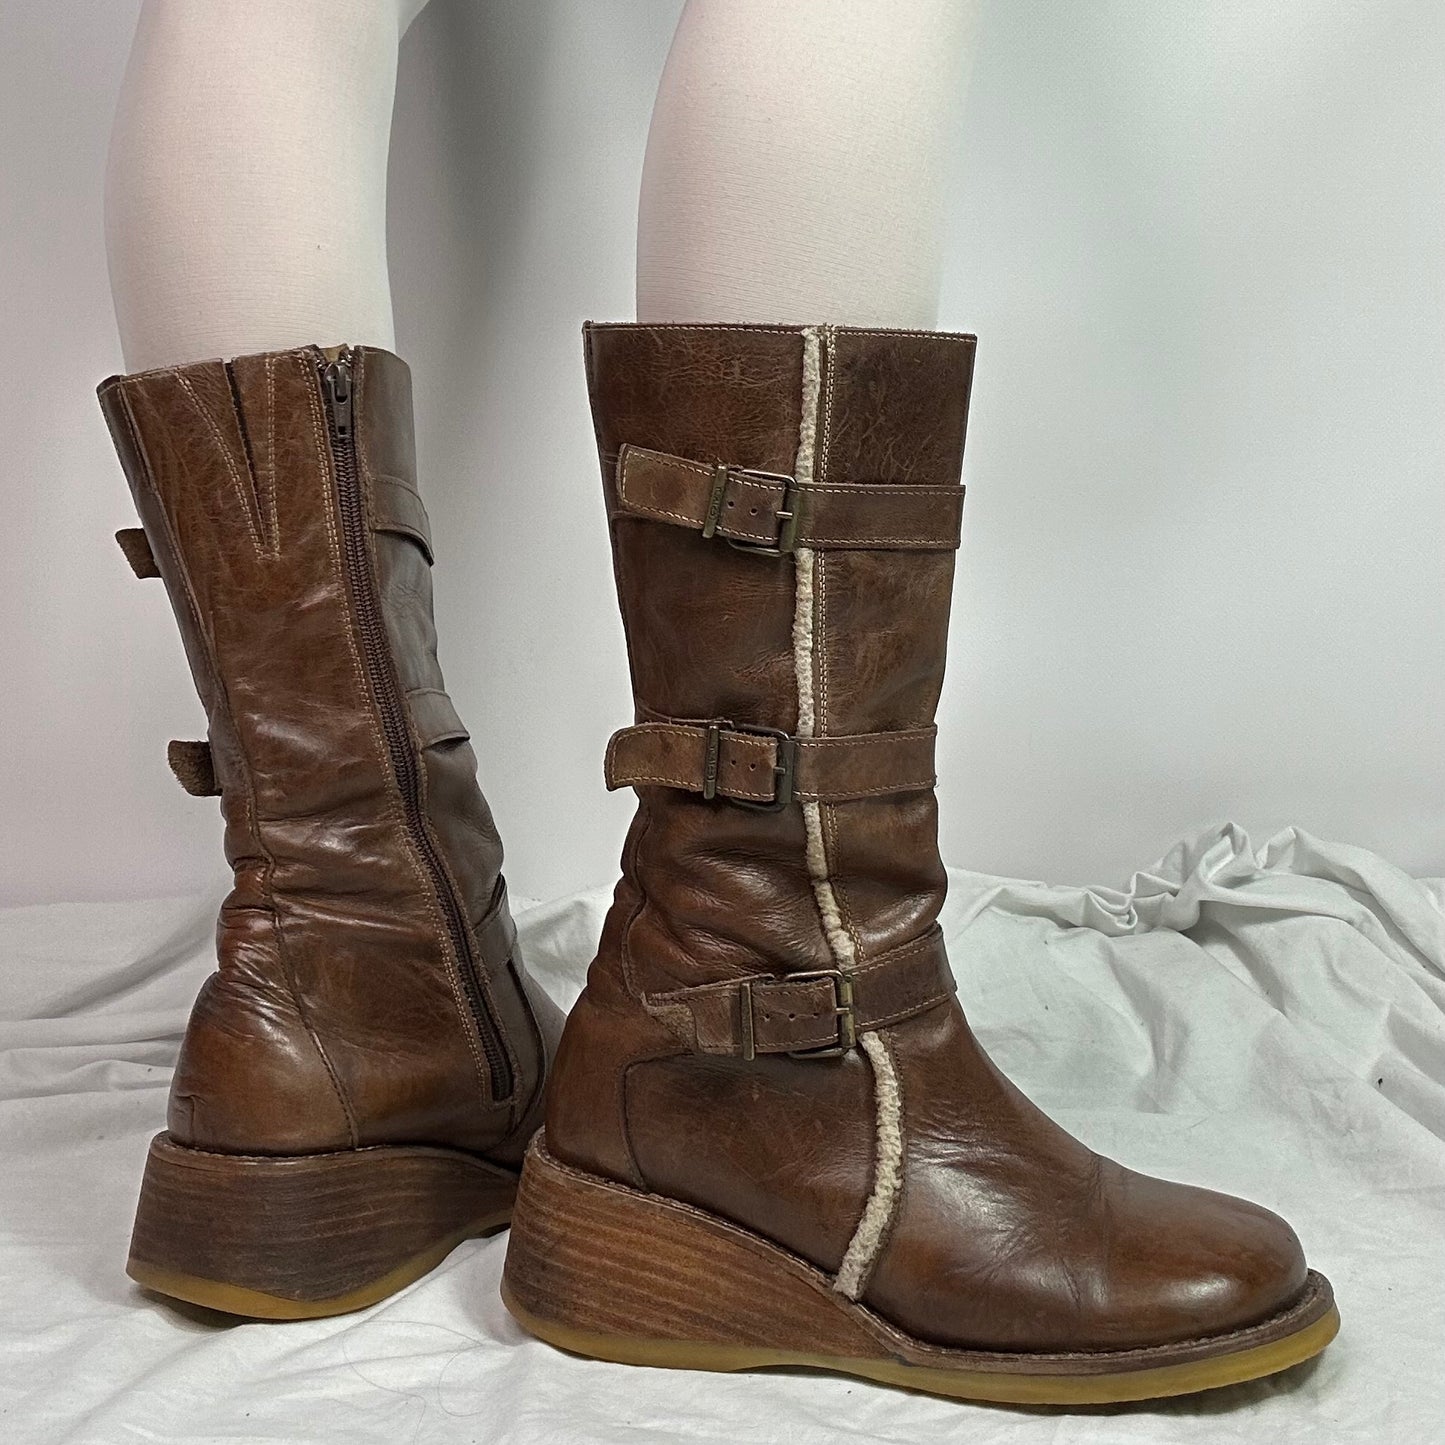 Destroy Vintage Leather Platform Boots